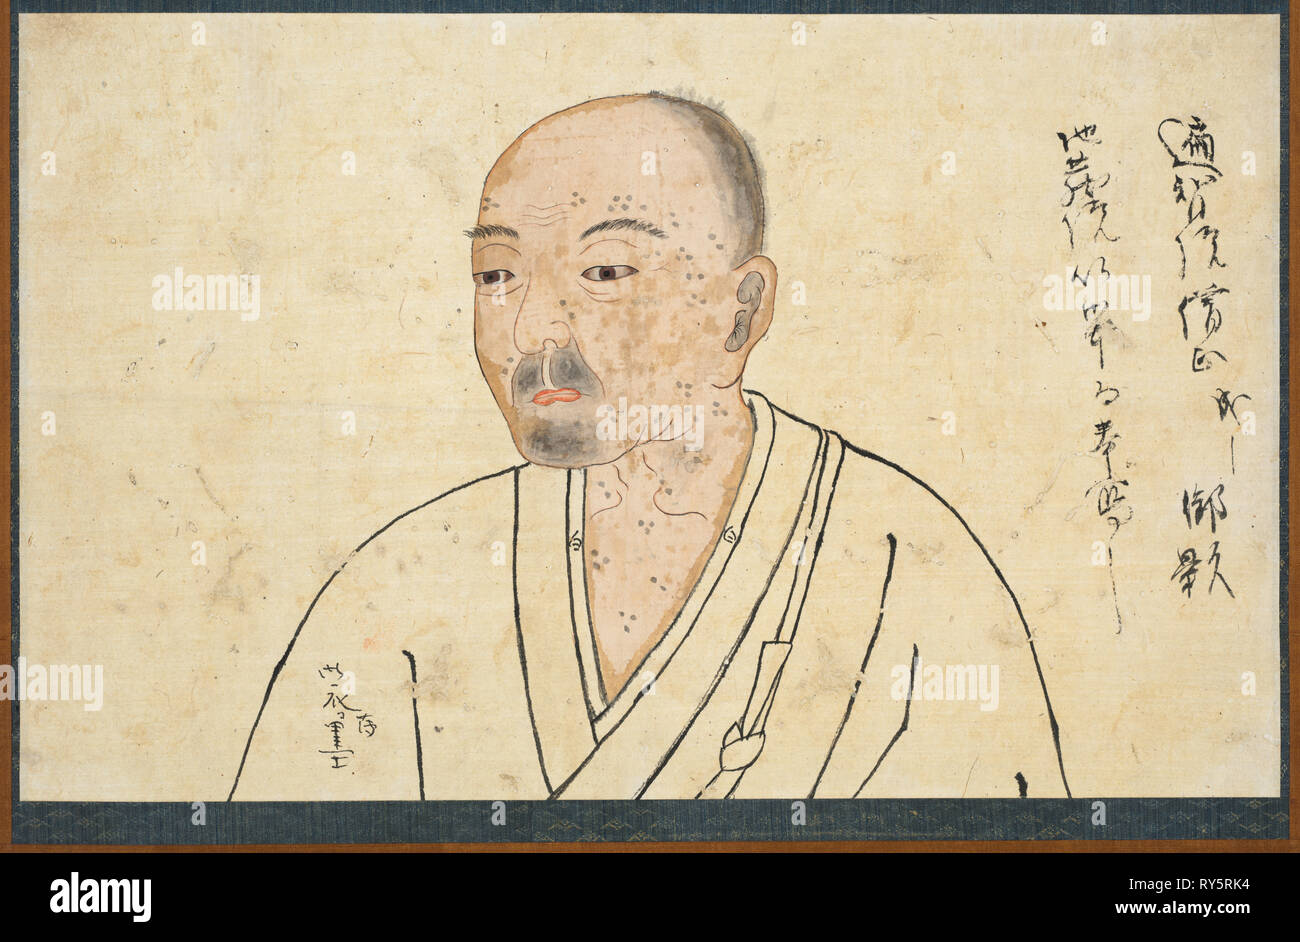 Ritratto di Seigen Kokushi, 1300s. Giappone, periodo Kamakura (1185-1333).  Appendere scorrere; inchiostro e leggero di colore su carta; immagine: 25,5  x 40,9 cm (10 1/16 x 16 1/8 in.), in totale: 107,8